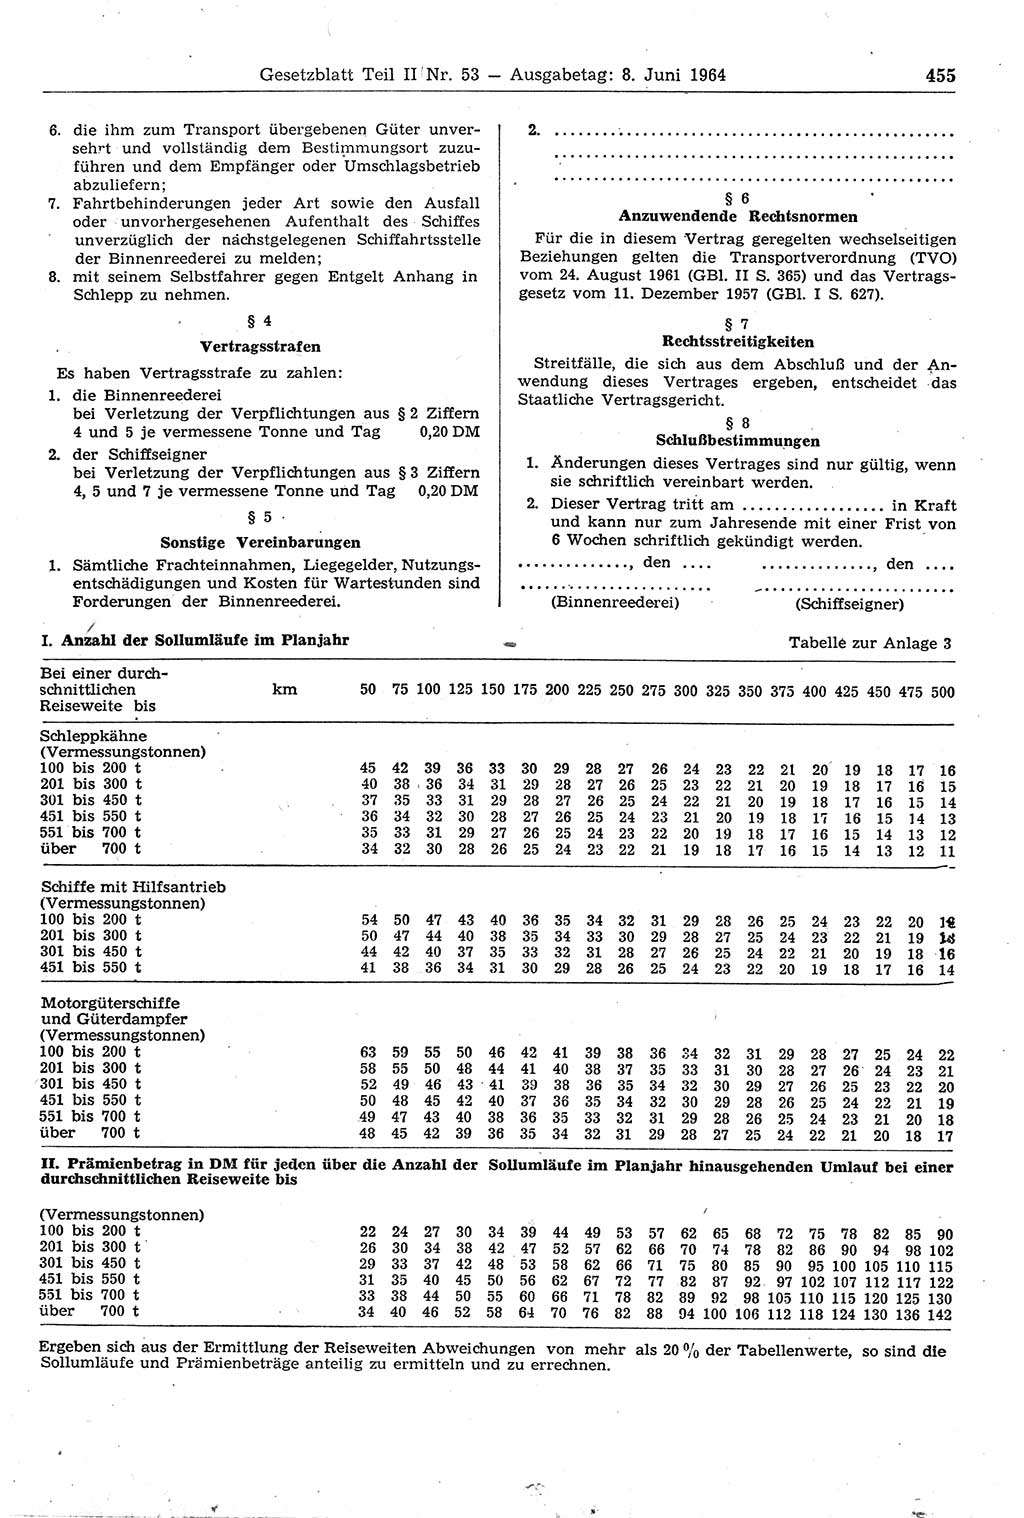 Gesetzblatt (GBl.) der Deutschen Demokratischen Republik (DDR) Teil ⅠⅠ 1964, Seite 455 (GBl. DDR ⅠⅠ 1964, S. 455)